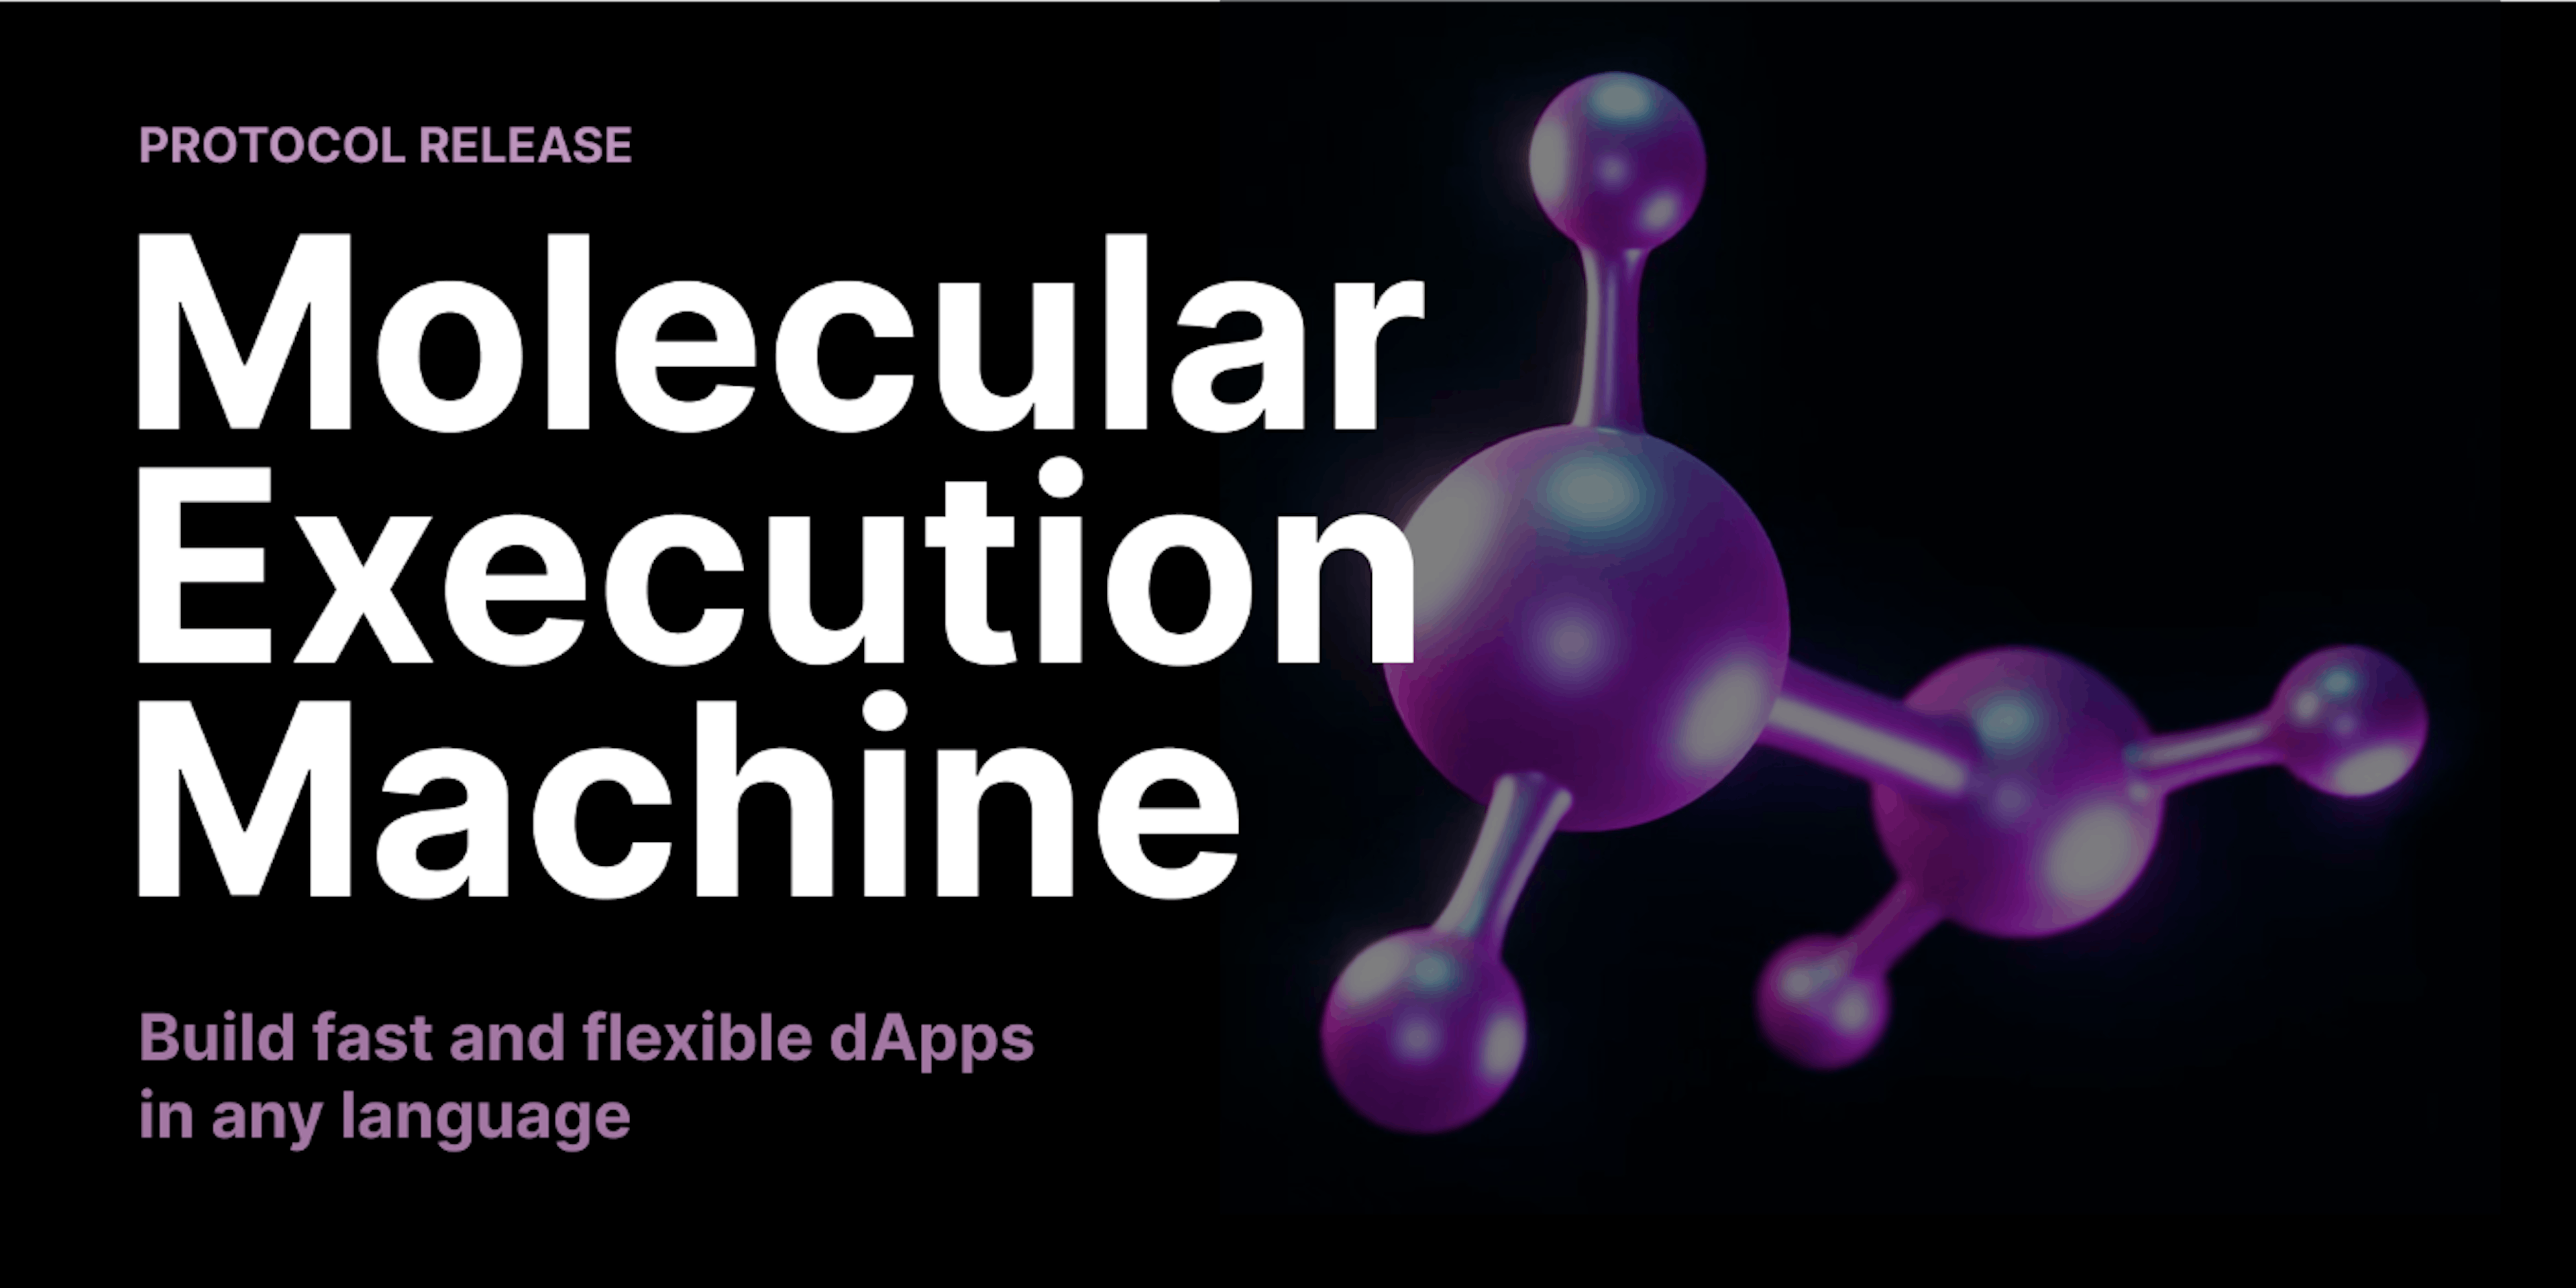 featured image - Présentation du calcul flexible et évolutif avec la machine d'exécution moléculaire de Decent Land Labs